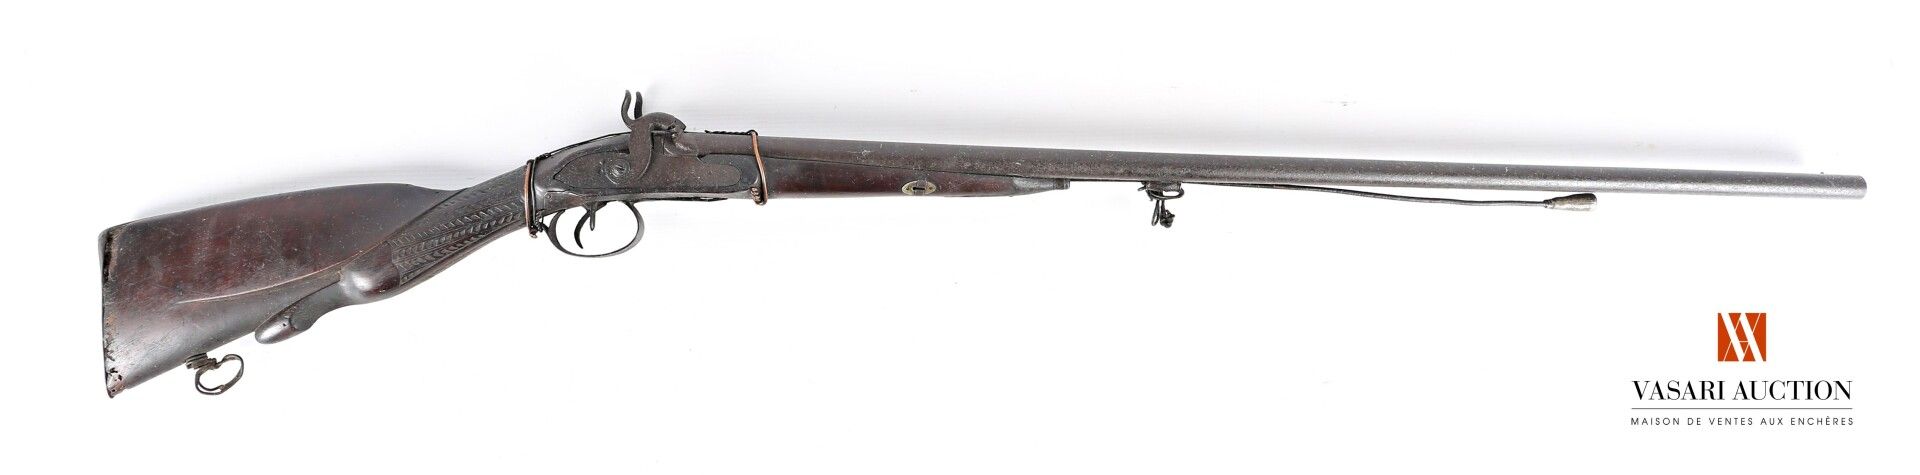 Null 打击式霰弹枪，81厘米口径枪管，鸭嘴式枪托，磨损，氧化，机制有待修改，修理，状况一般 TL 121厘米

第十九世纪时期

D类